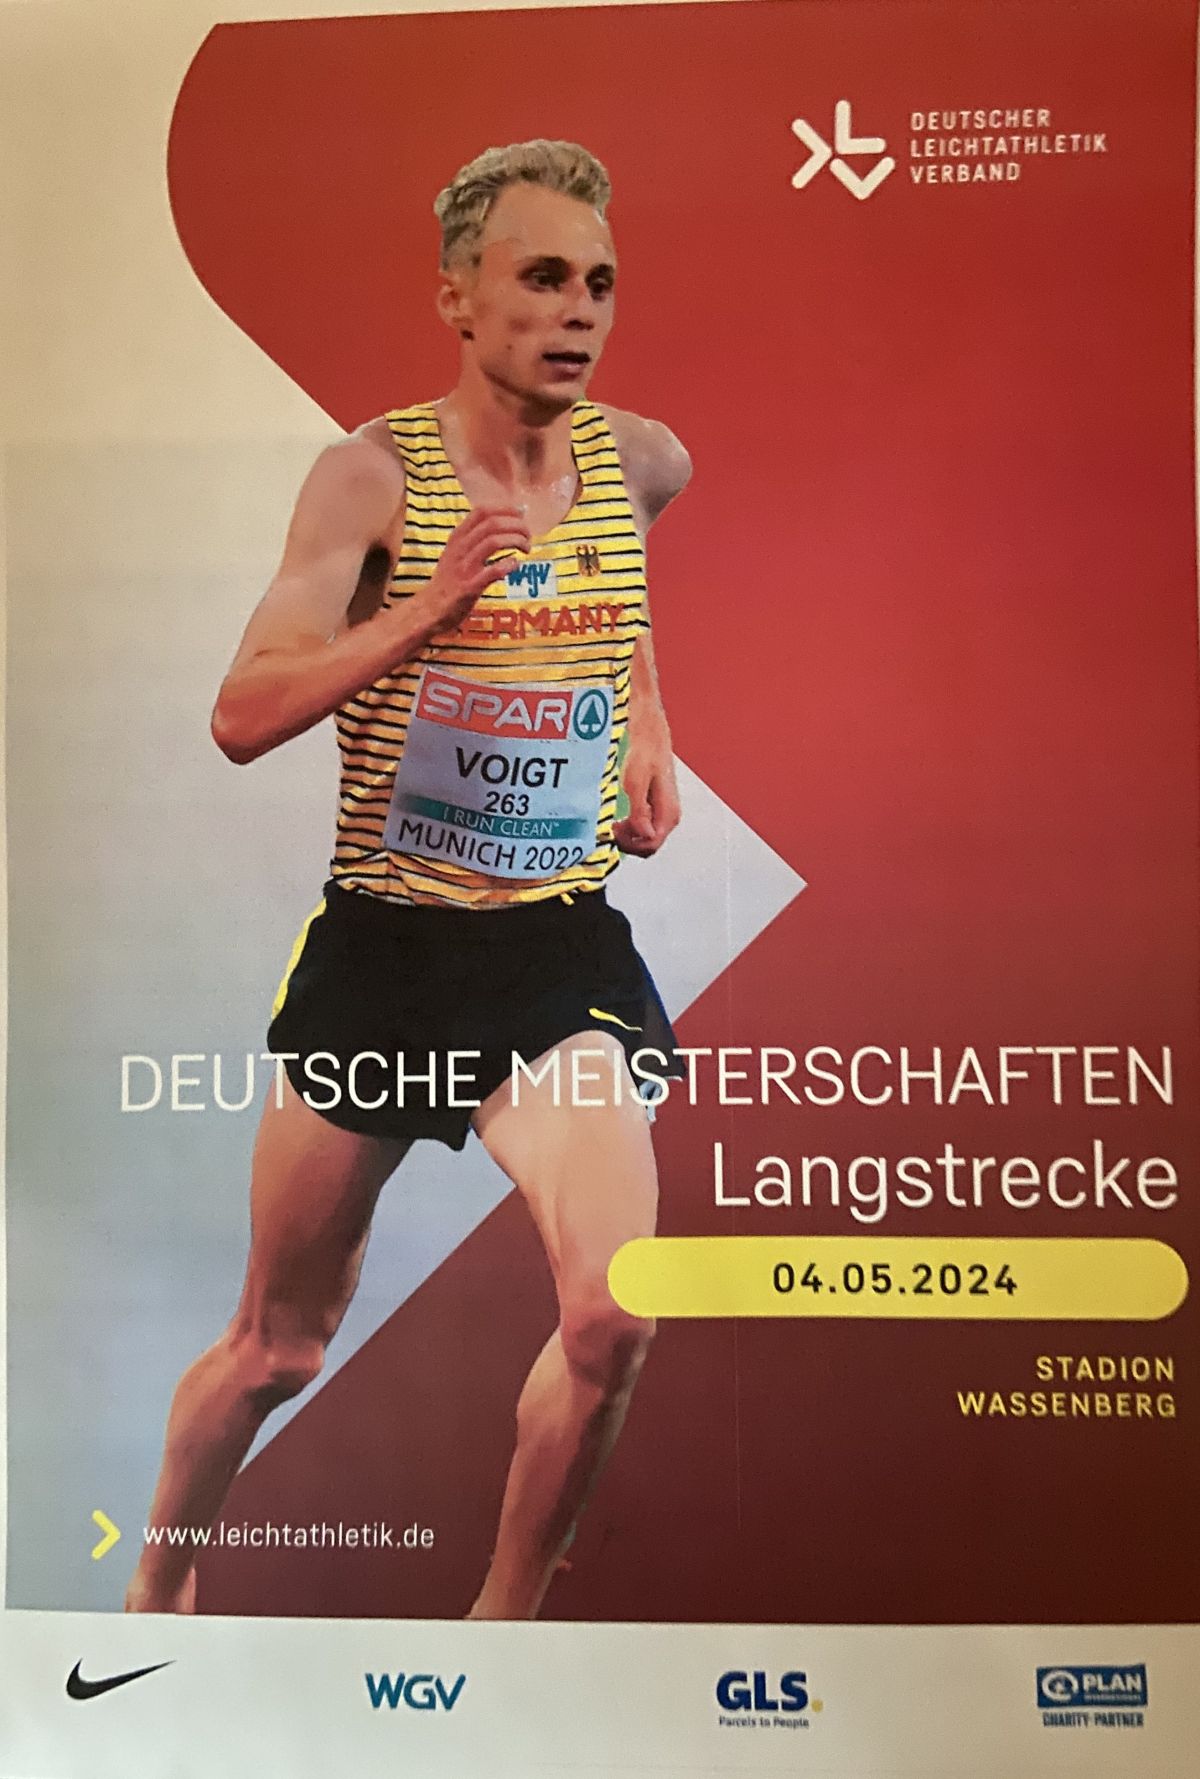 Vorschau auf die Deutschen Langstrecken-Meisterschaften in Wassenberg am 04. Mai 2024